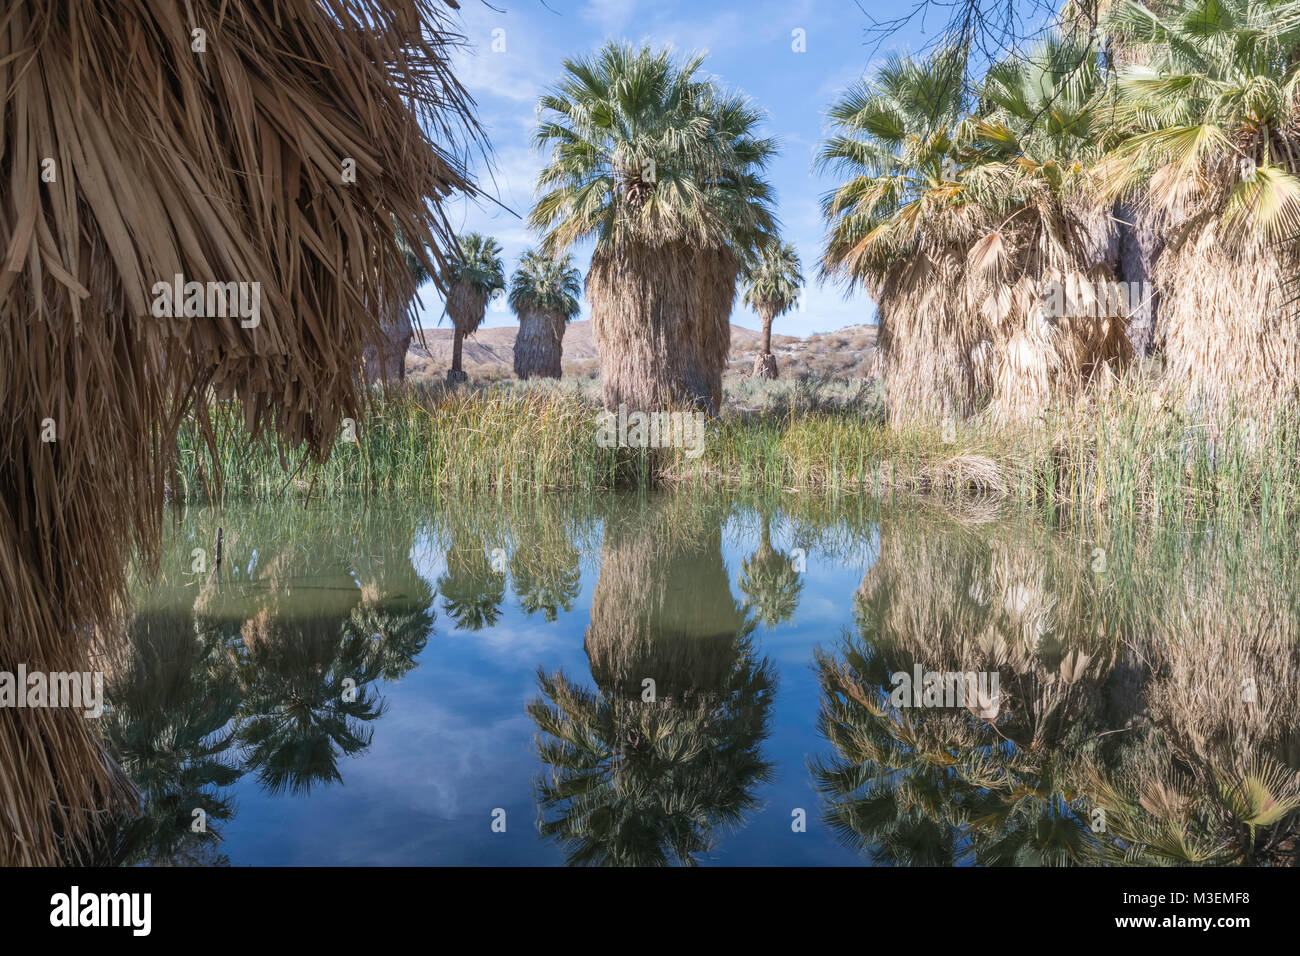 Thousand Palms, California - 11 décembre 2017 : l'Étang McCallum Grove est une oasis du désert sur un sentier dans la vallée de Coachella Préserver et est alimenté par w Banque D'Images